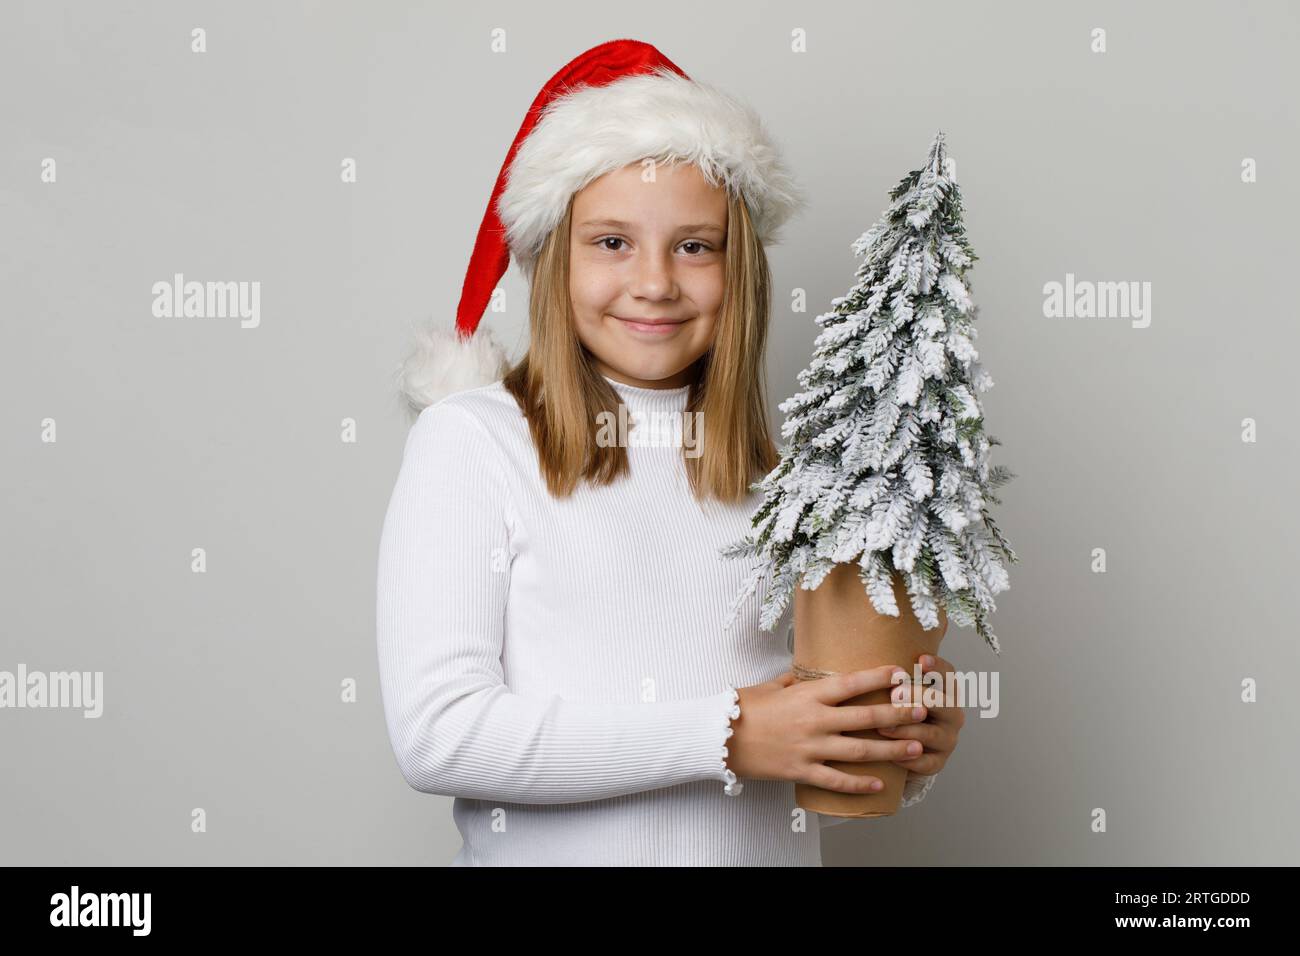 Kind Weihnachtsmann lächelt. Kleines Mädchen und Weihnachtsbaum. Xmas Kind 10 Jahre alt Stockfoto